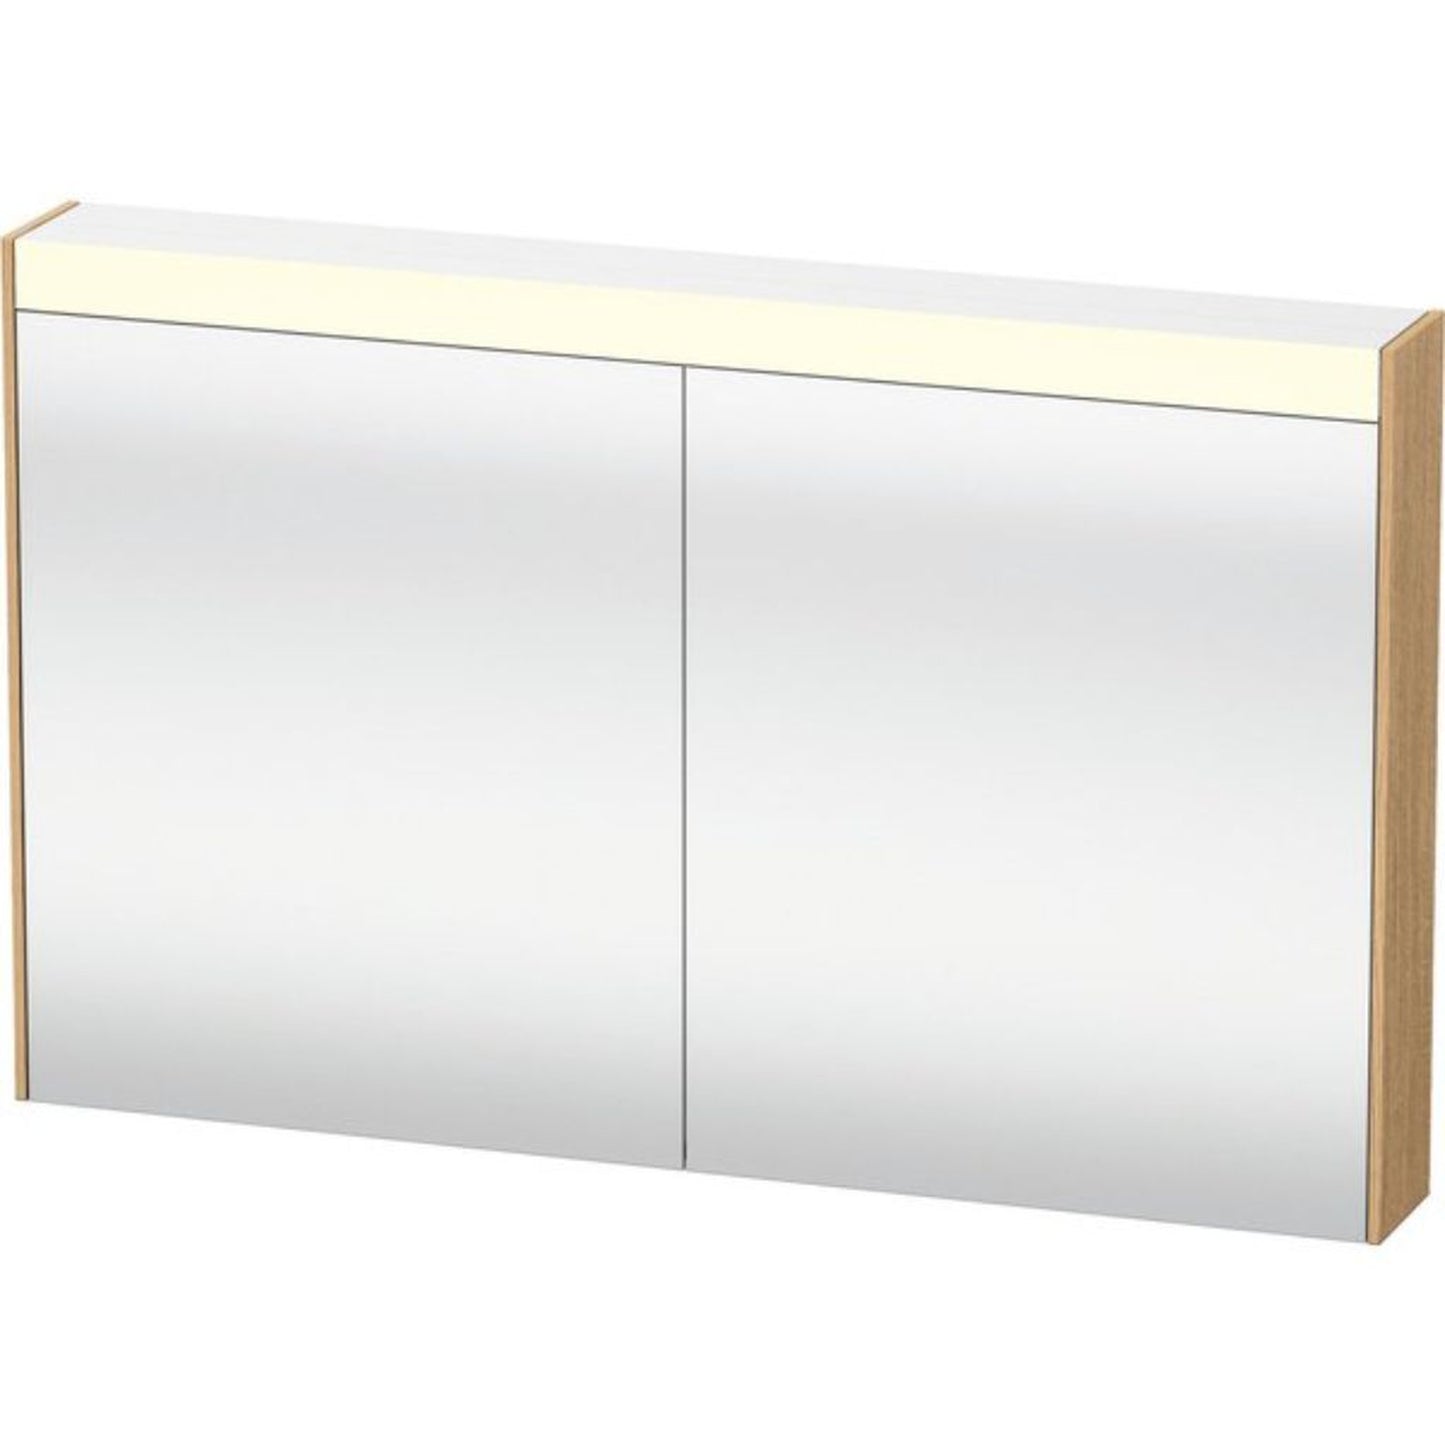 Duravit Brioso 40" x 30" x 6" Mirror Cabinet With Lighting Natural Oak